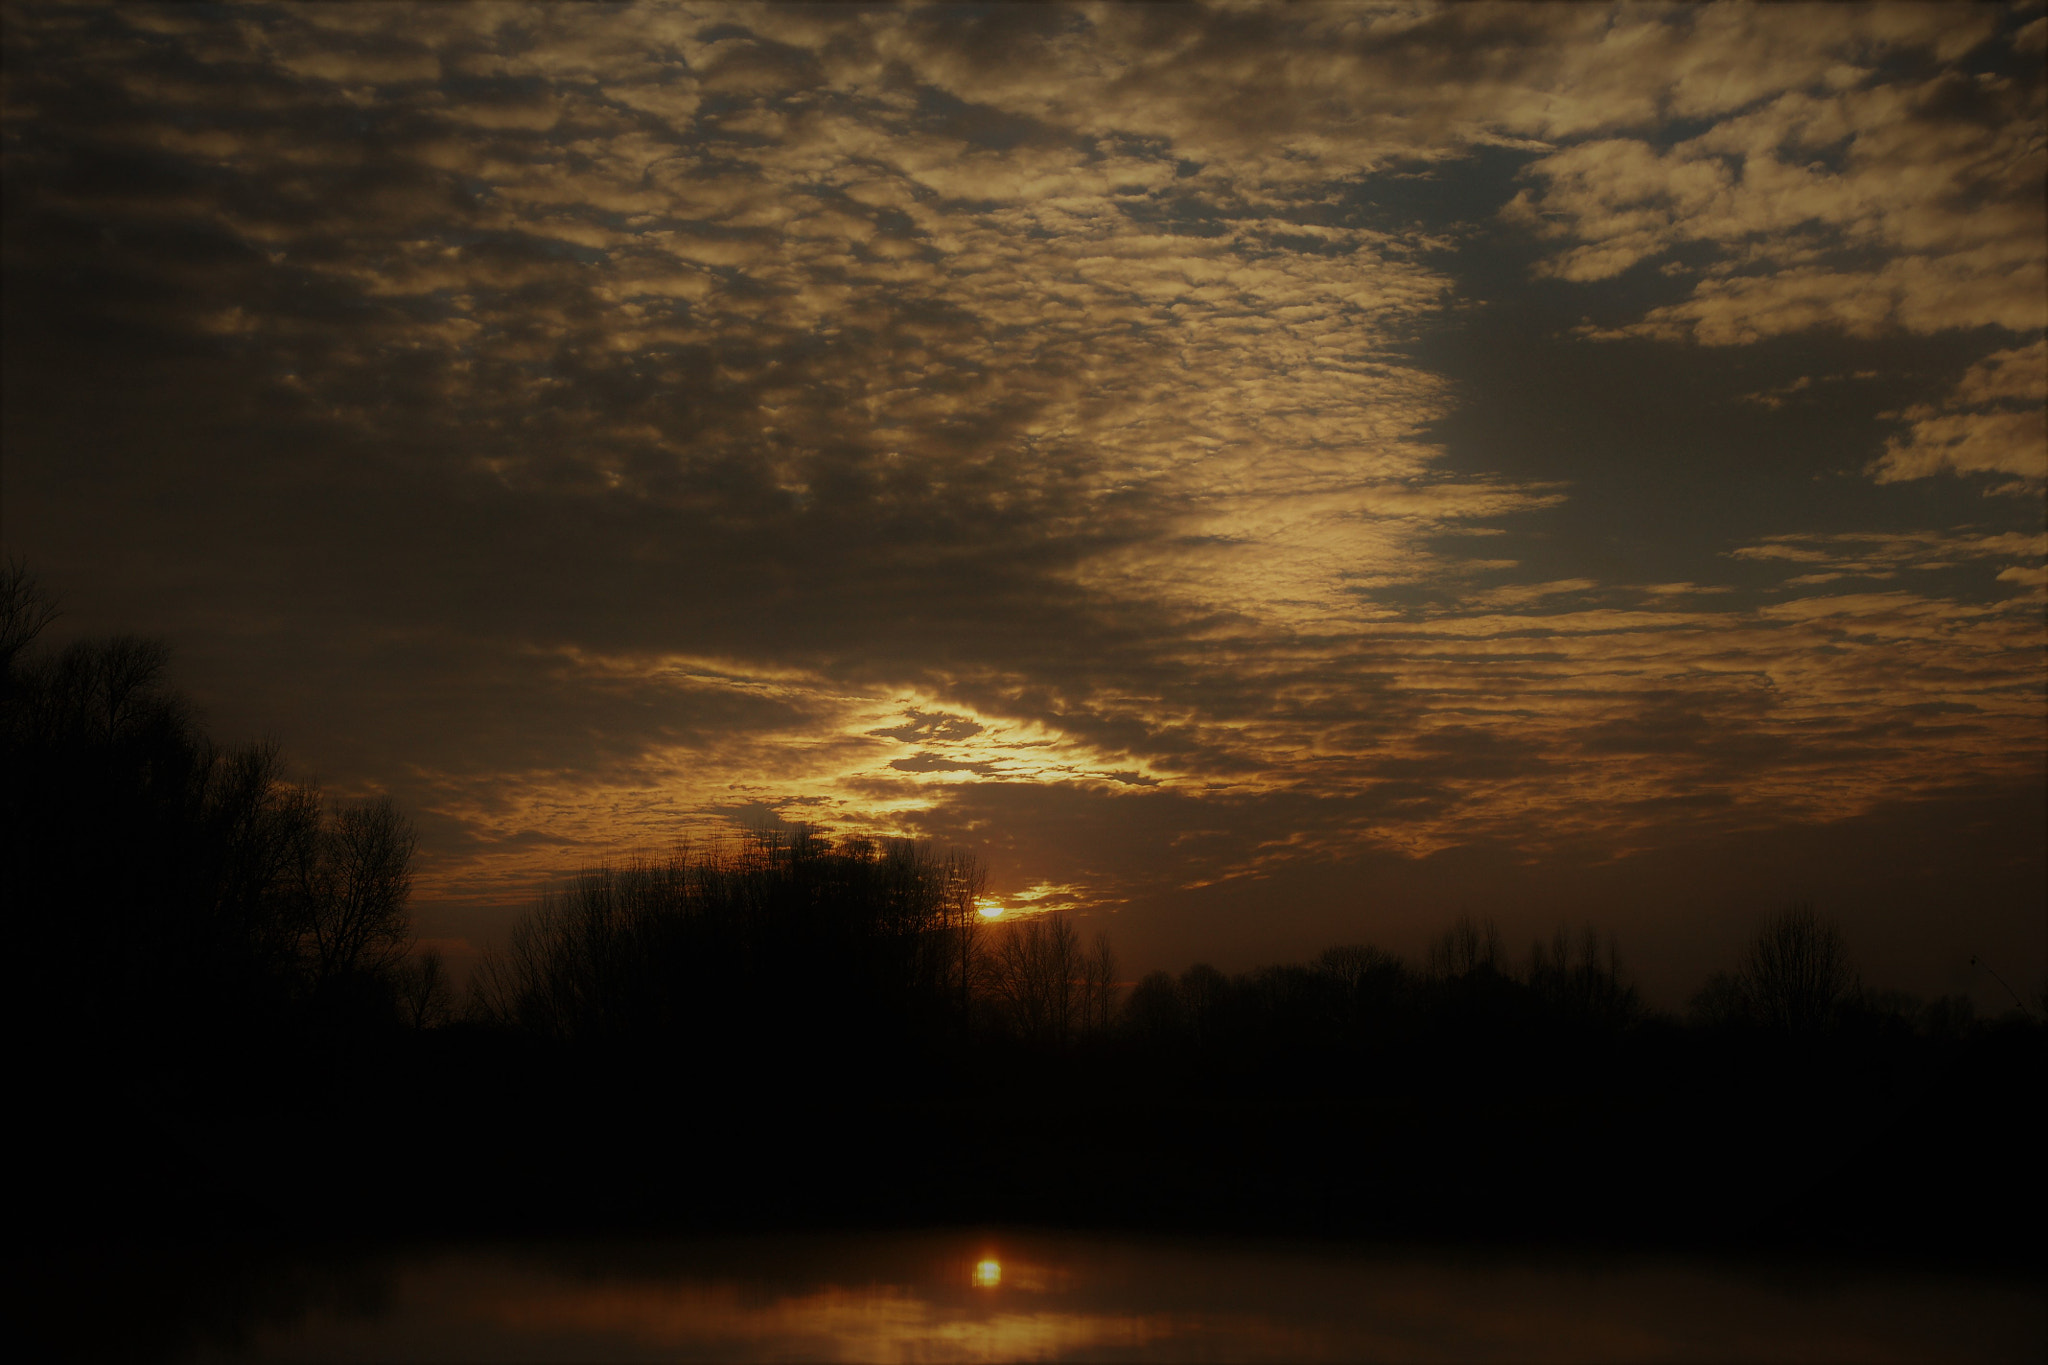 Sony Alpha DSLR-A700 sample photo. Sunset_landscape photography